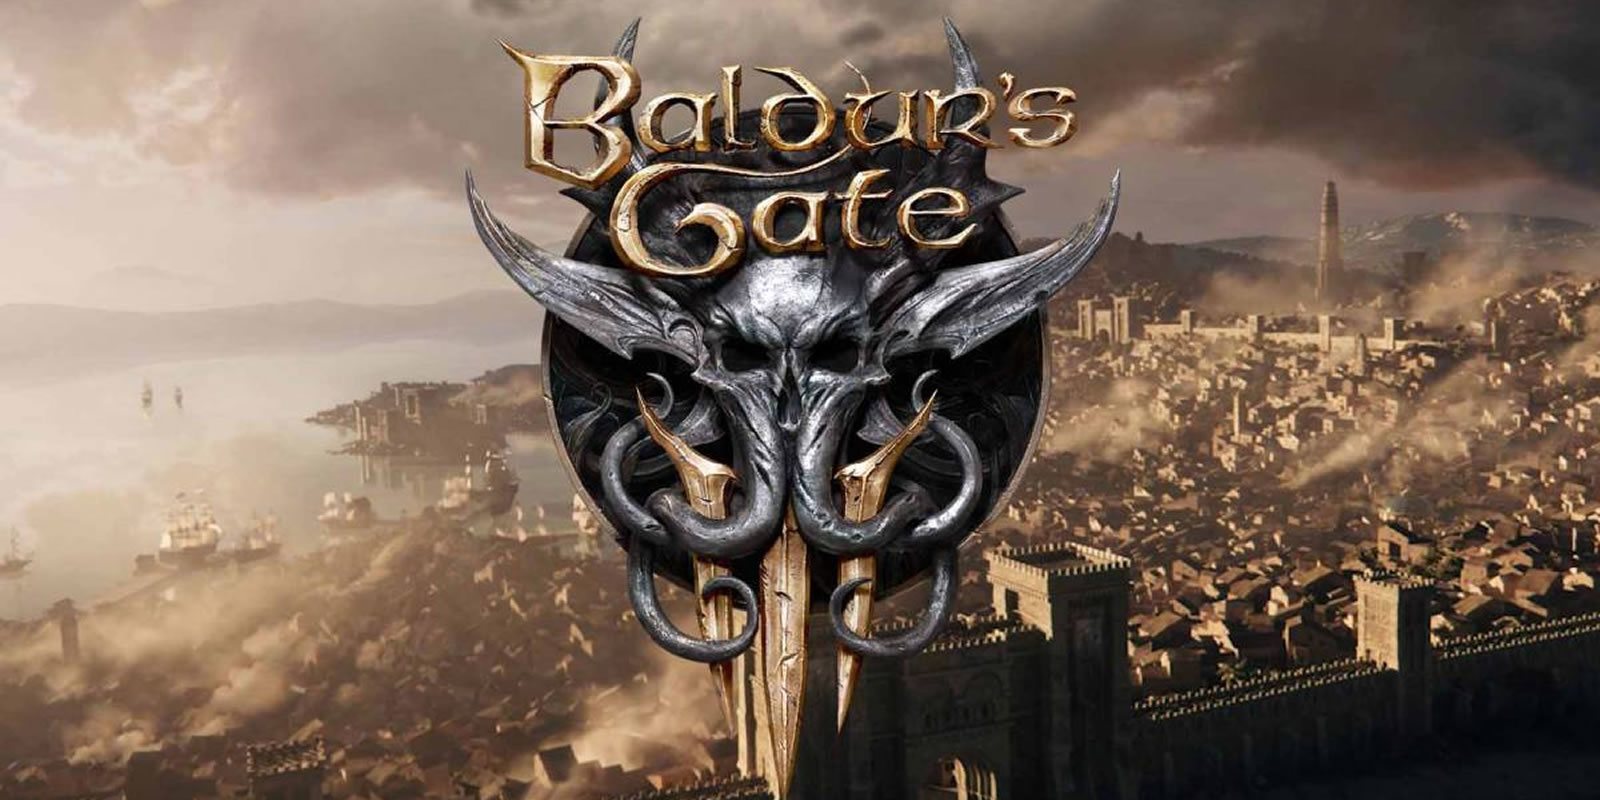 El primer gameplay de 'Baldur's Gate III' llegará durante la PAX East